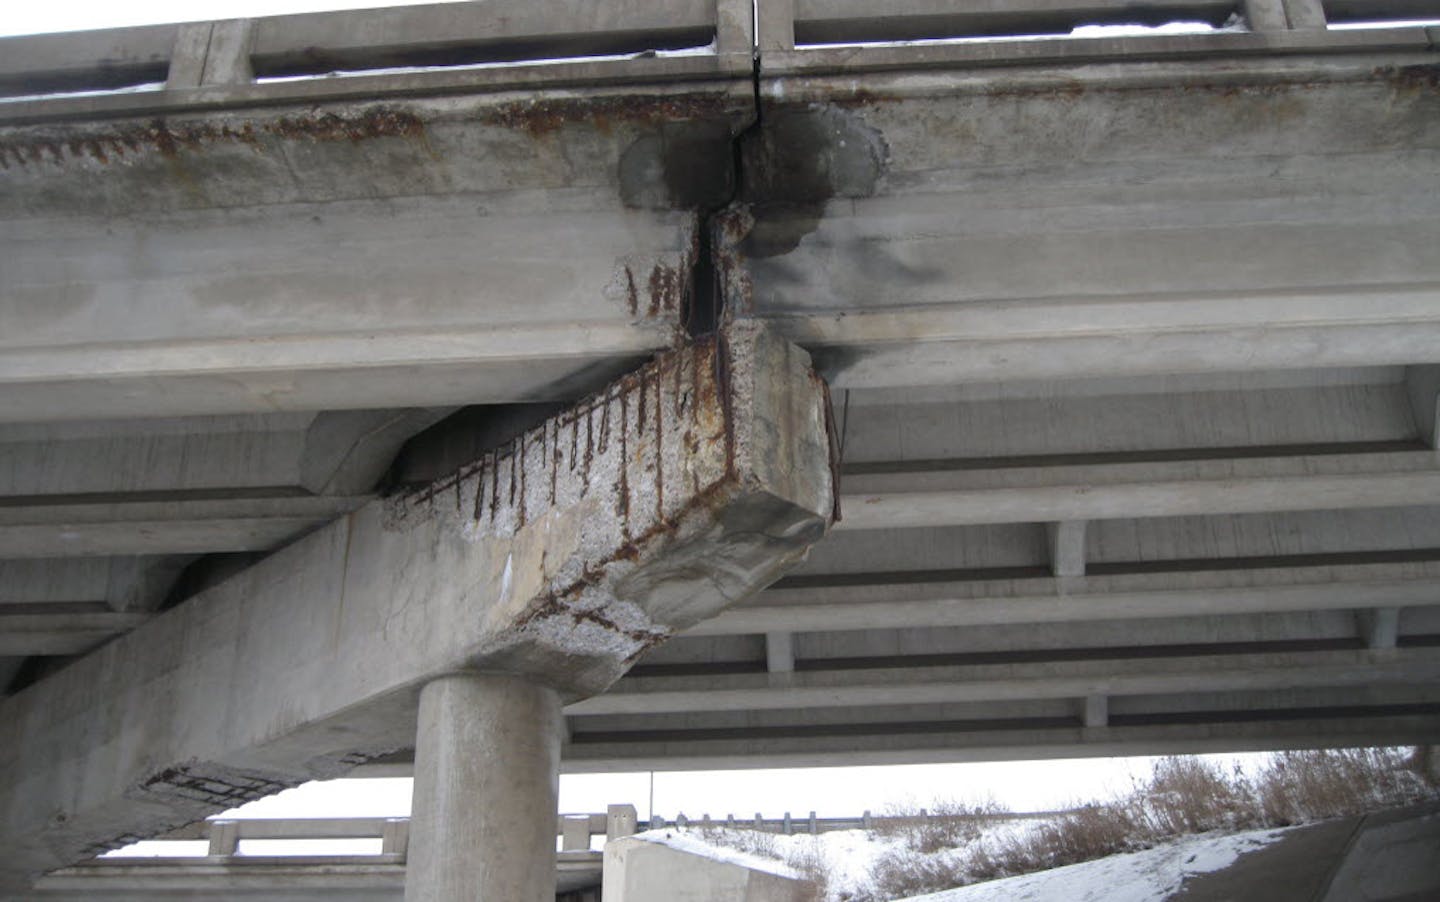 Photos: DCR's Pedestrian Bridges Are Crumbling Away - Streetsblog  Massachusetts